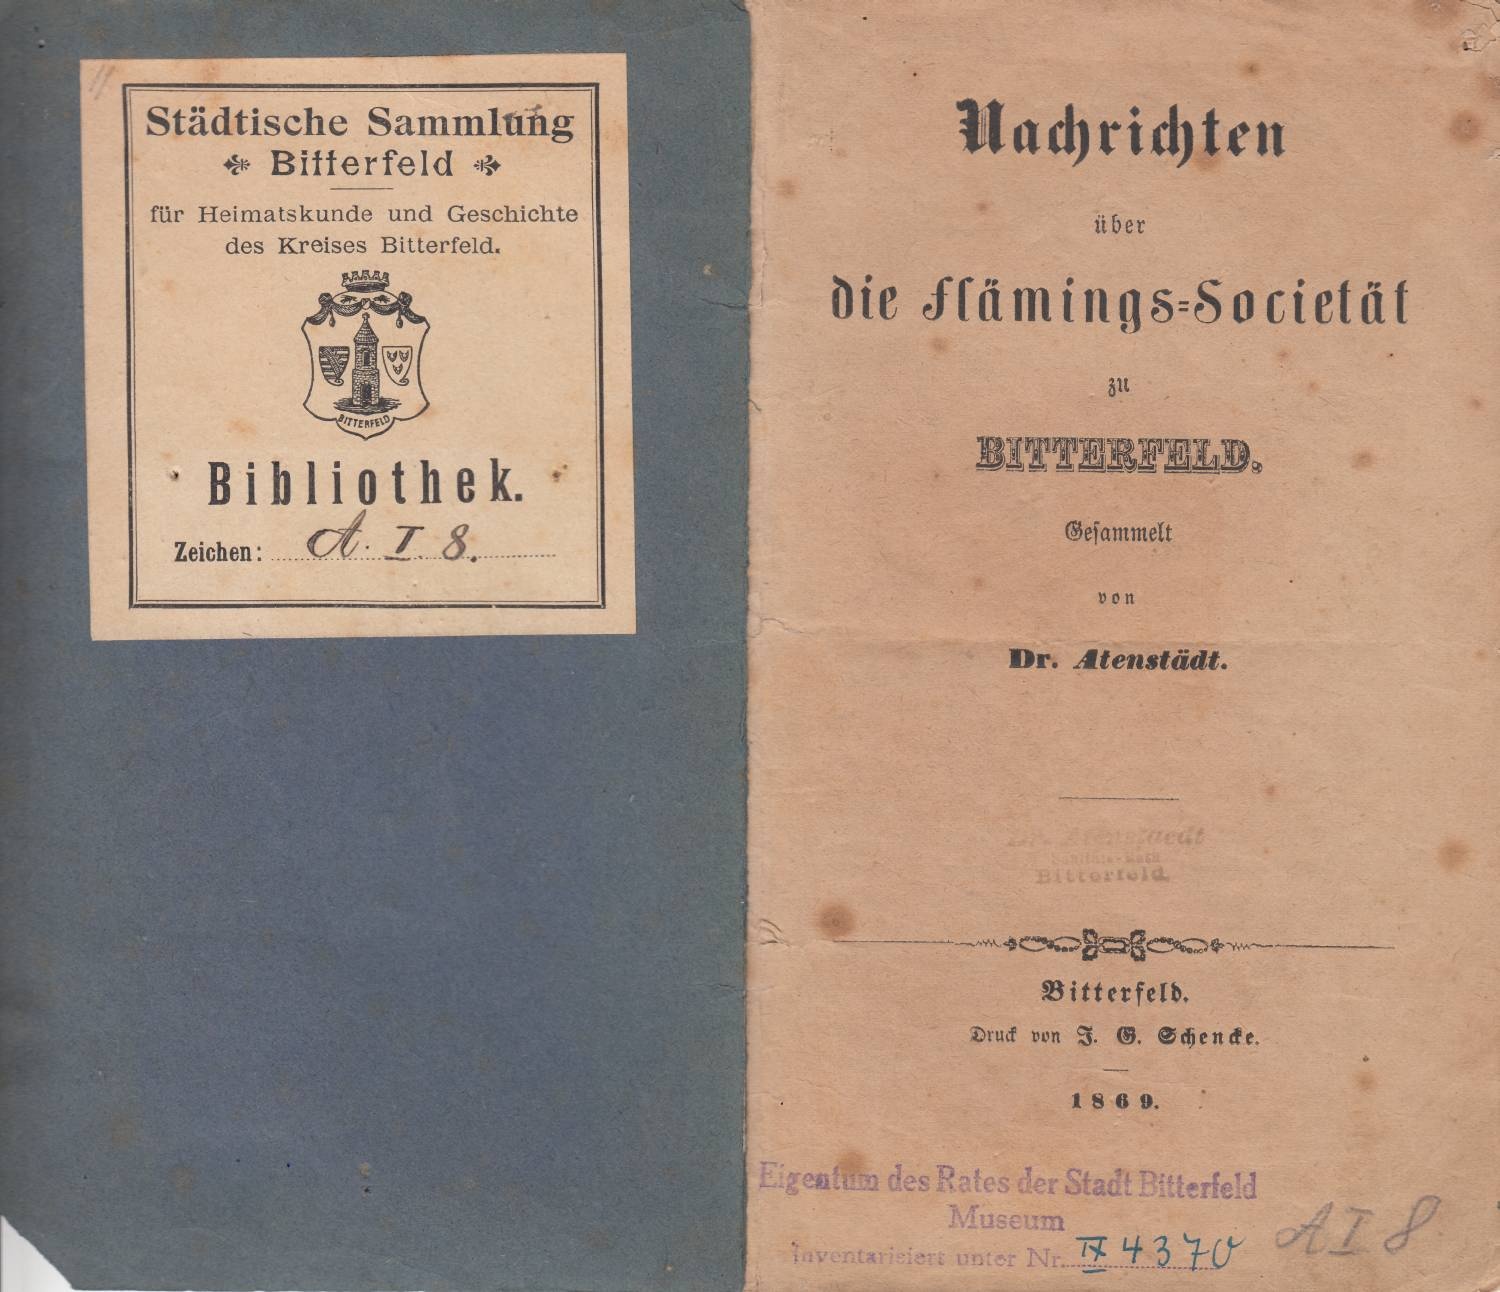 Nachrichten über die Flämings-Societät zu Bitterfeld. (Kreismuseum Bitterfeld CC BY-NC-SA)